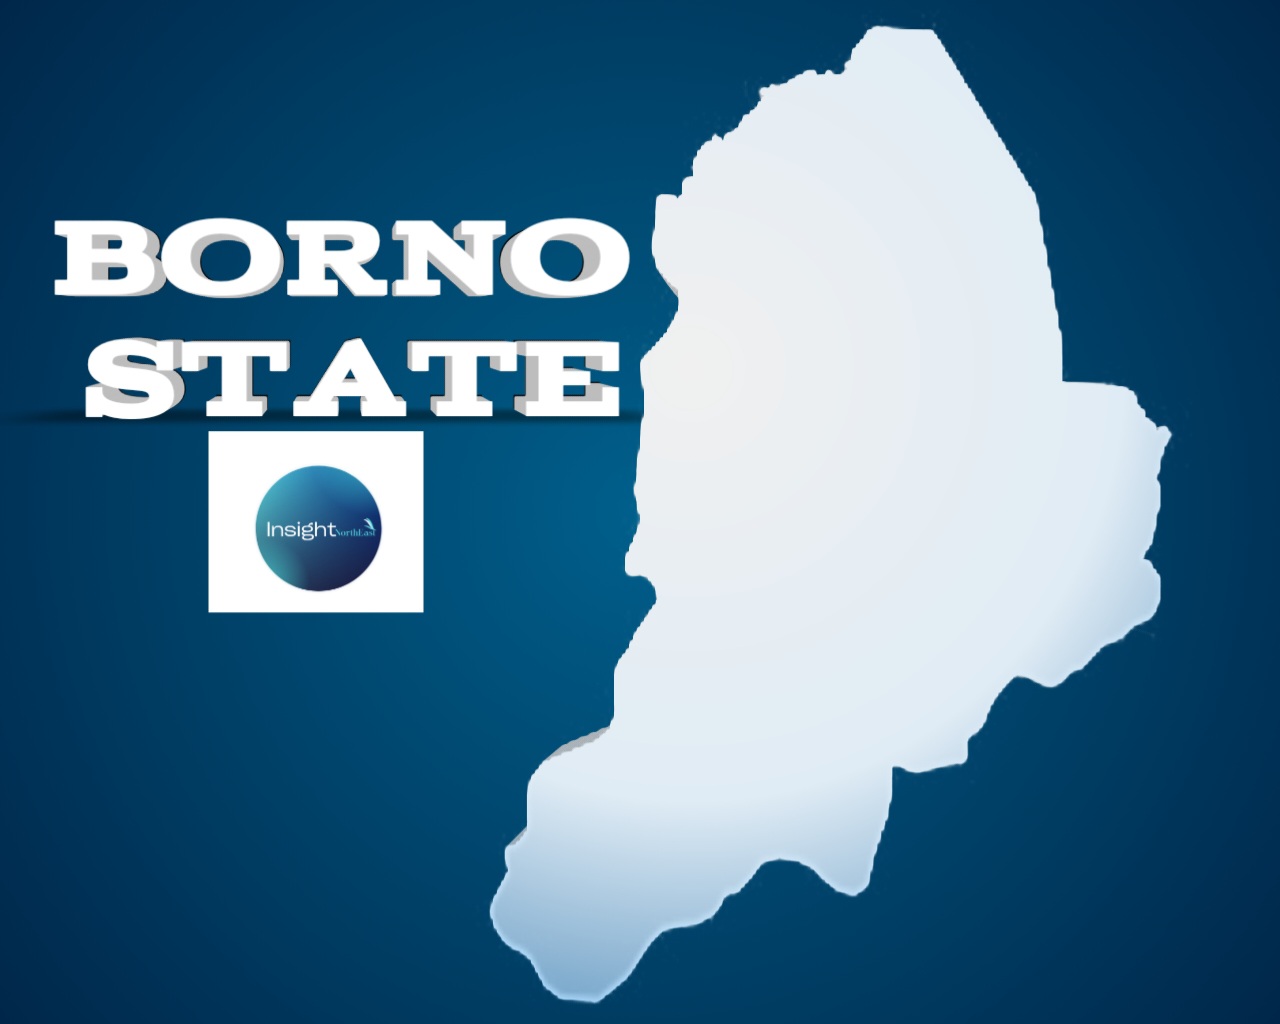 file photo of Borno state map